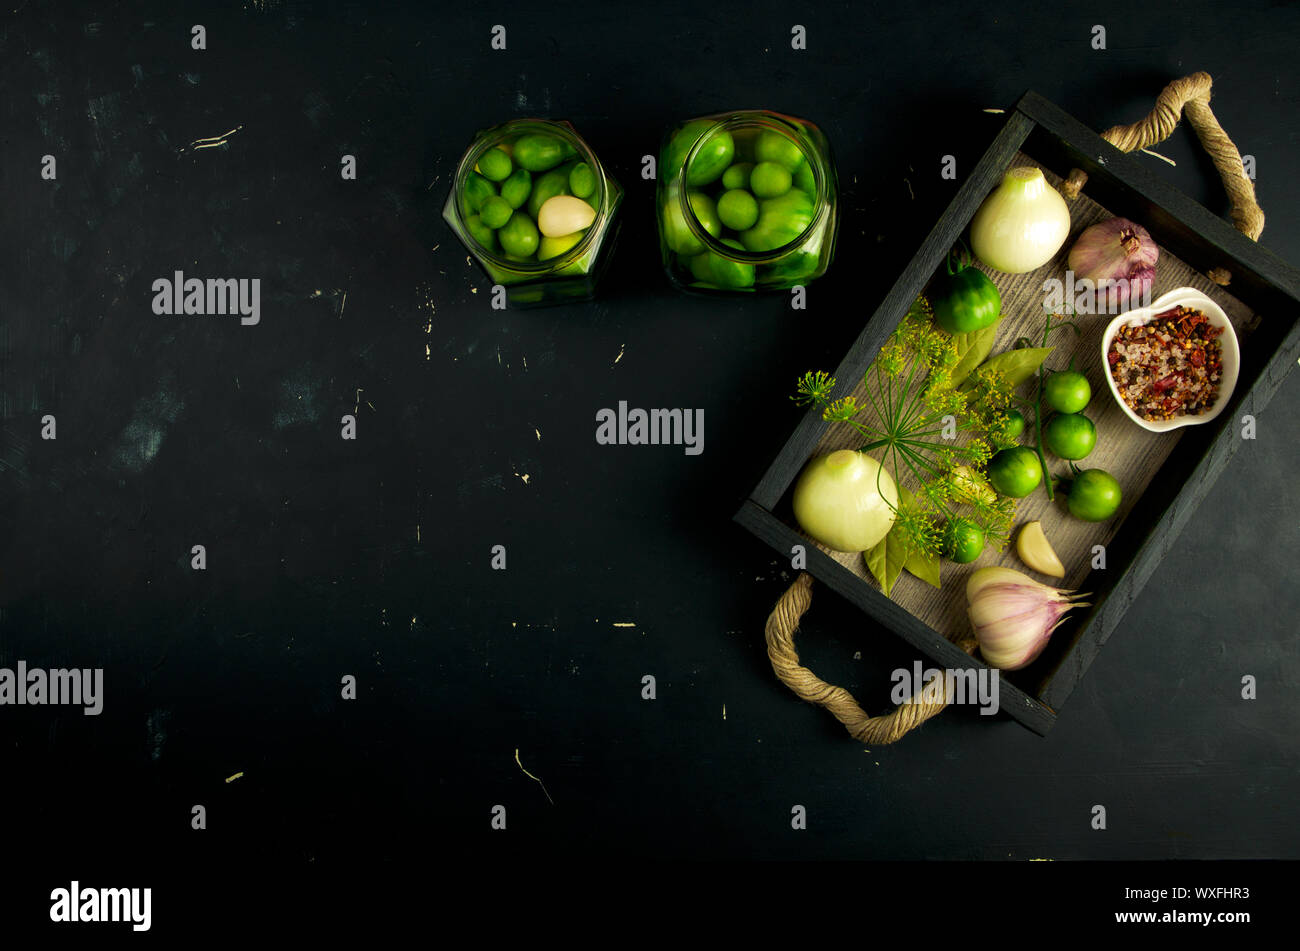 Textur VON GEMÜSE IN EINER BOX auf einem dunklen Hintergrund. Konzept der Vorbereitung Gemüse für den Winter. Stockfoto